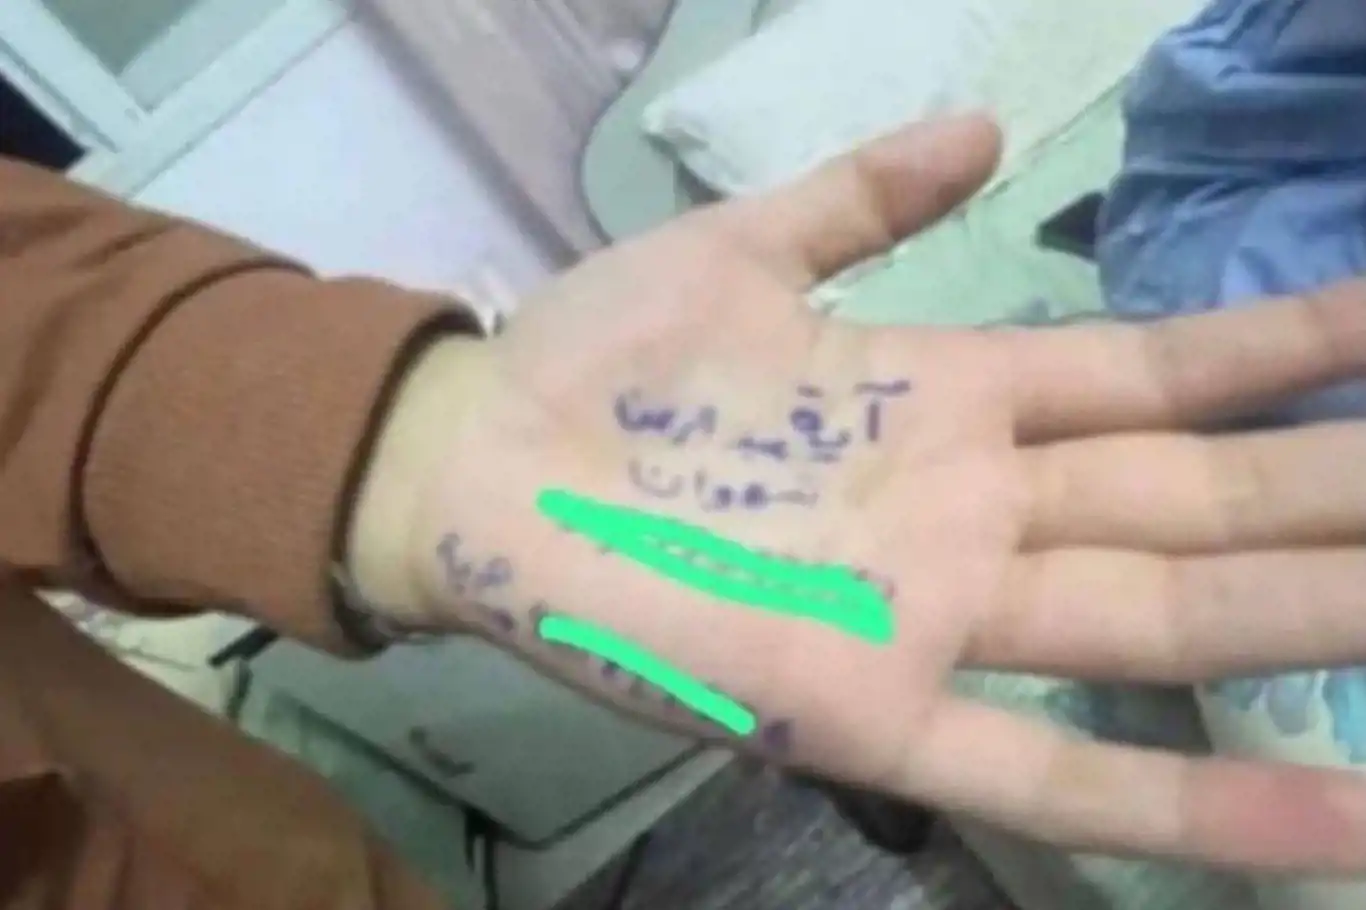 Filistinli çocuklar, cenazeleri teşhis edilebilsin diye isimlerini avuçlarına yazıyor